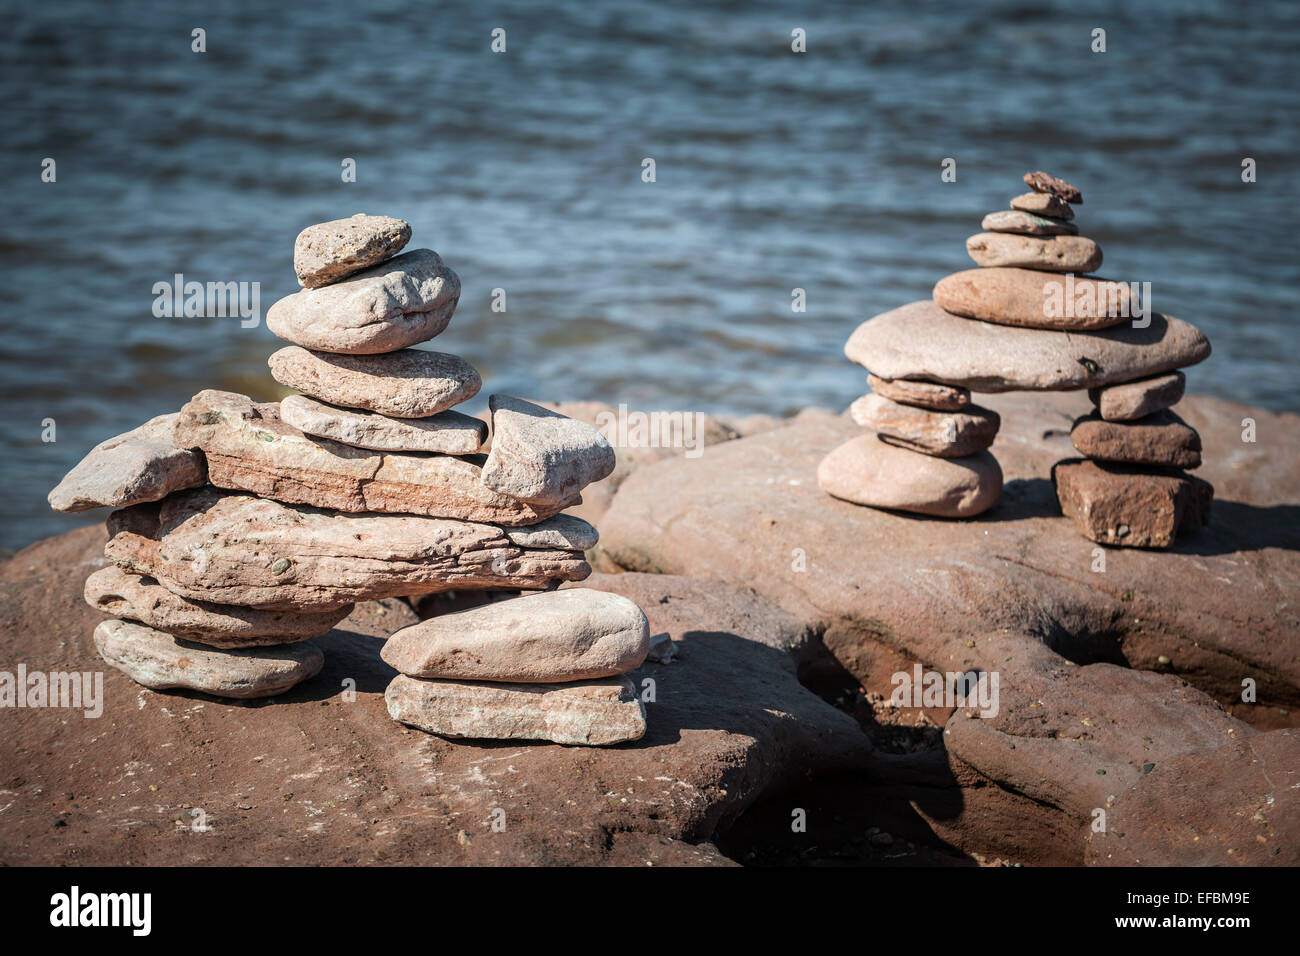 Deux petits cairns empilés ou inuksuk repères par pierre rive de l'océan Atlantique. Prince Edward Island, Canada. Banque D'Images